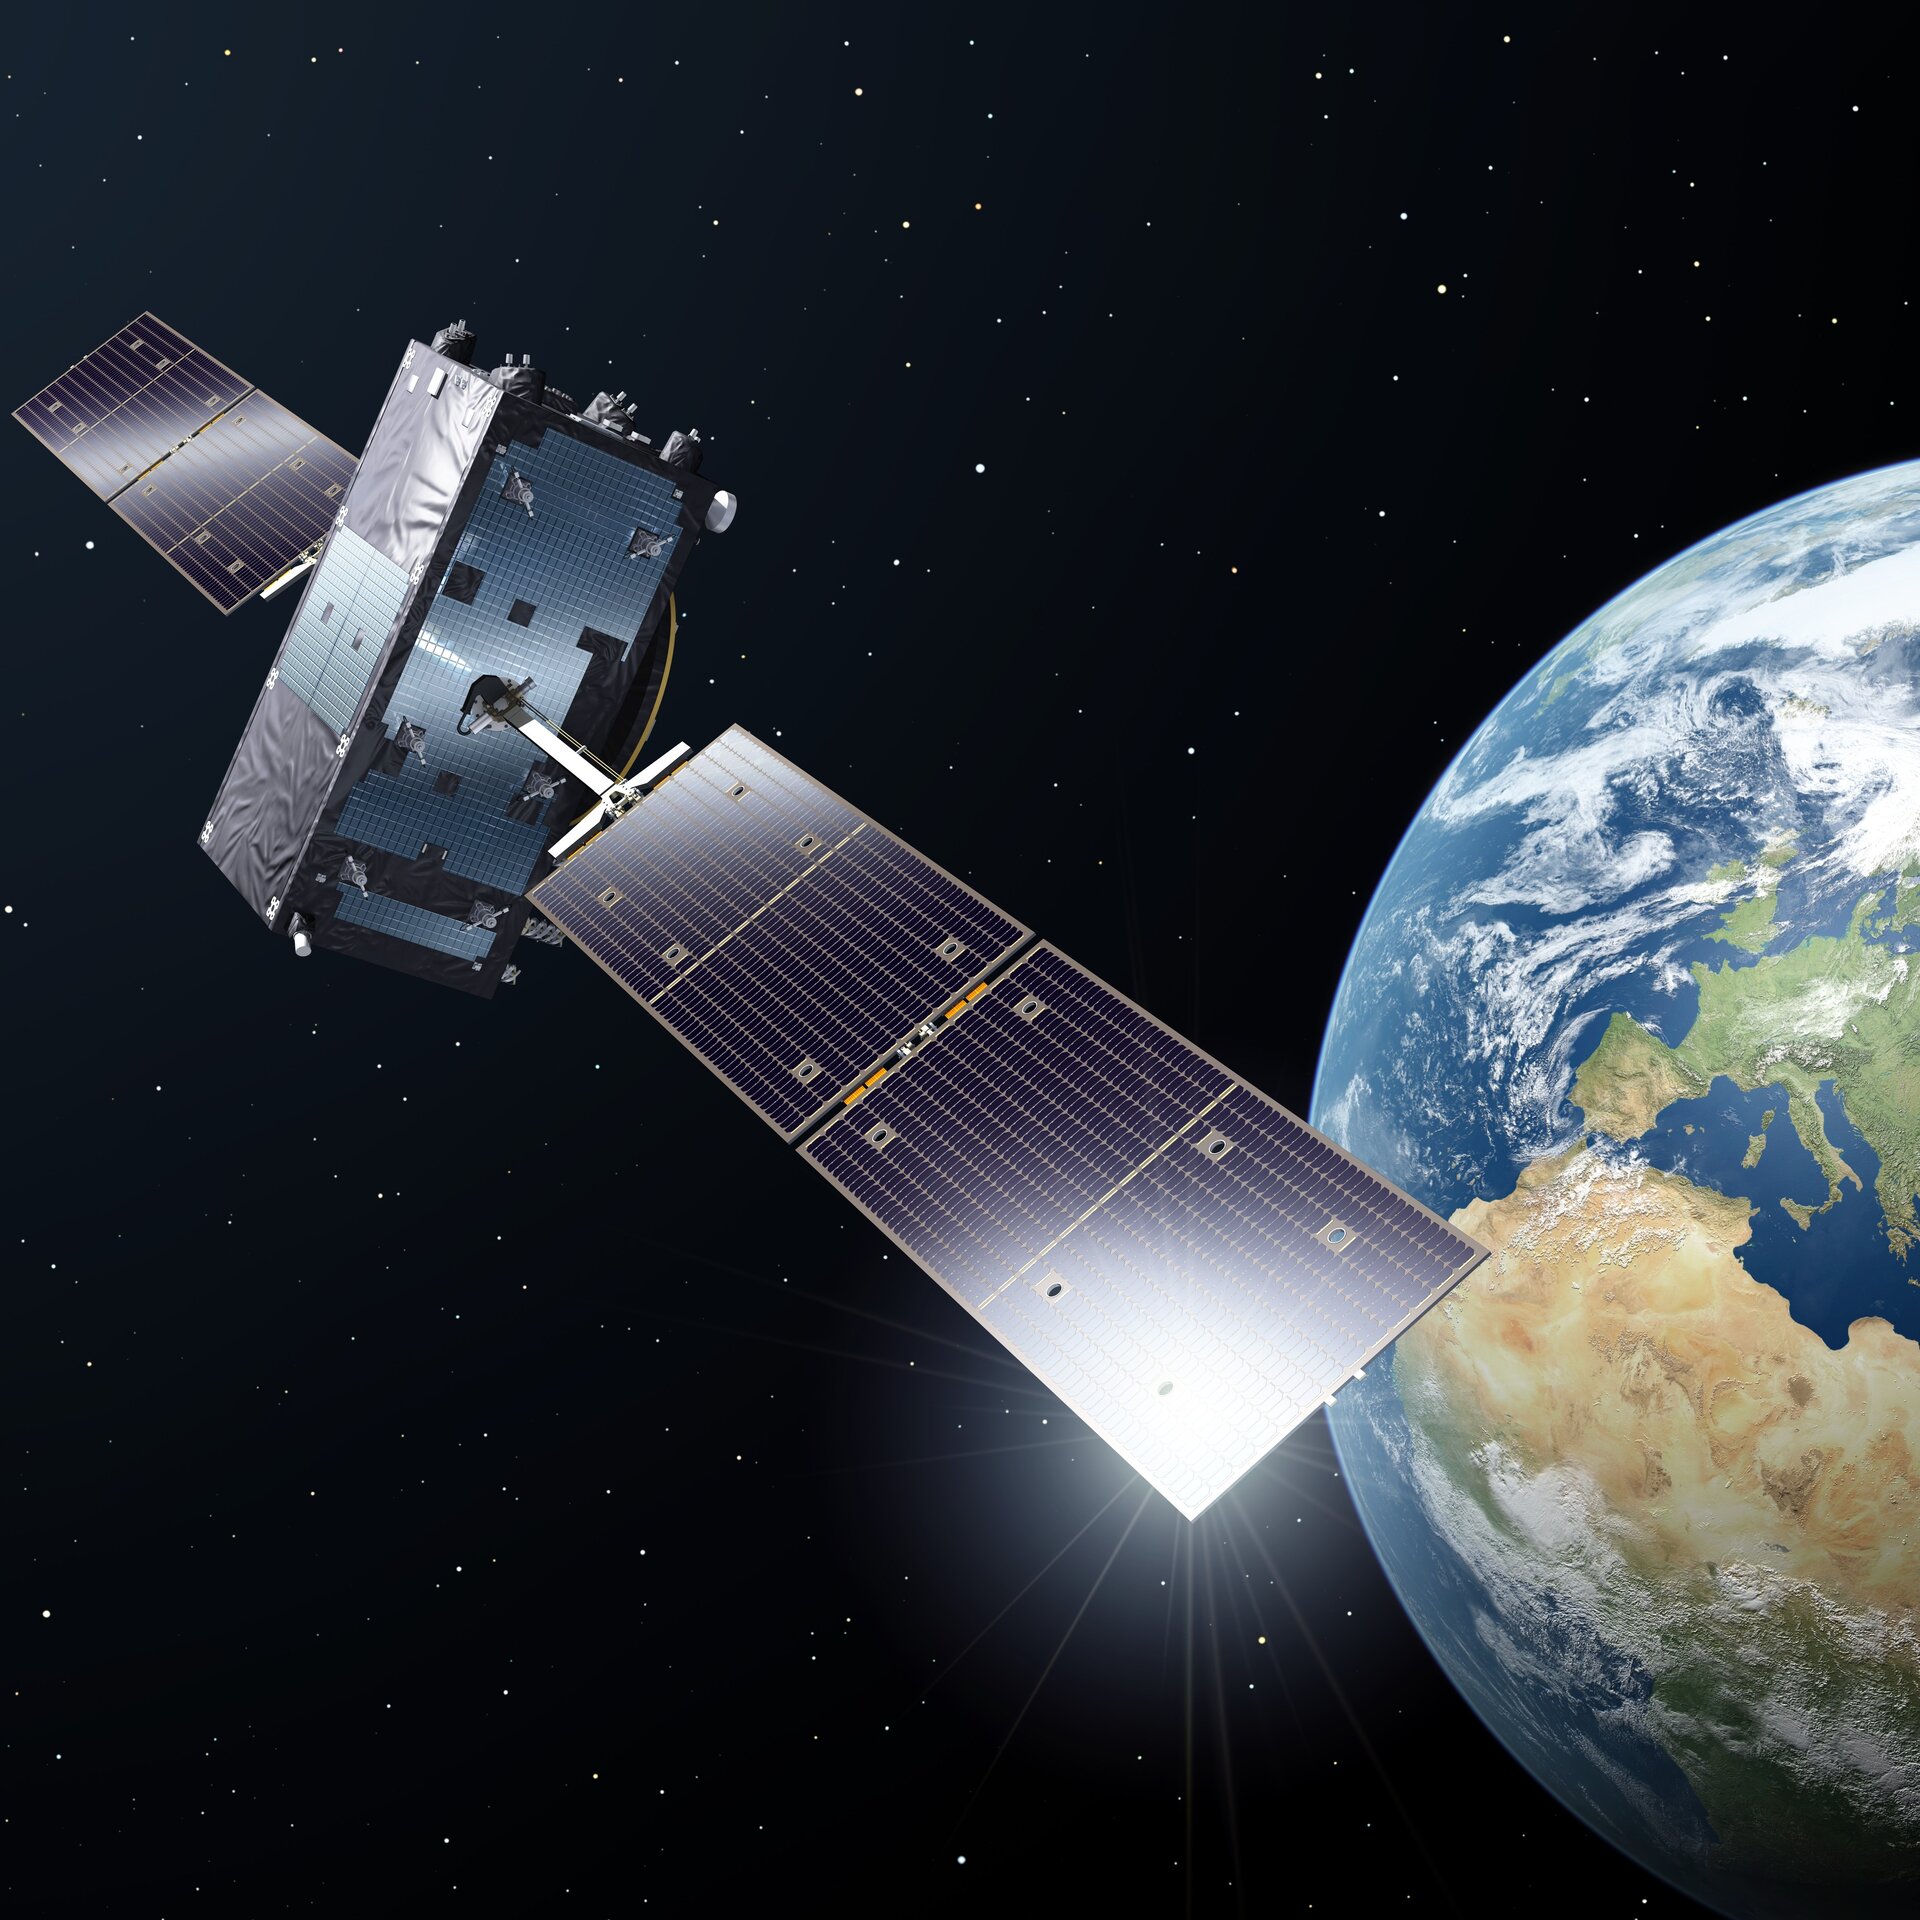 Galileo satellite in orbit